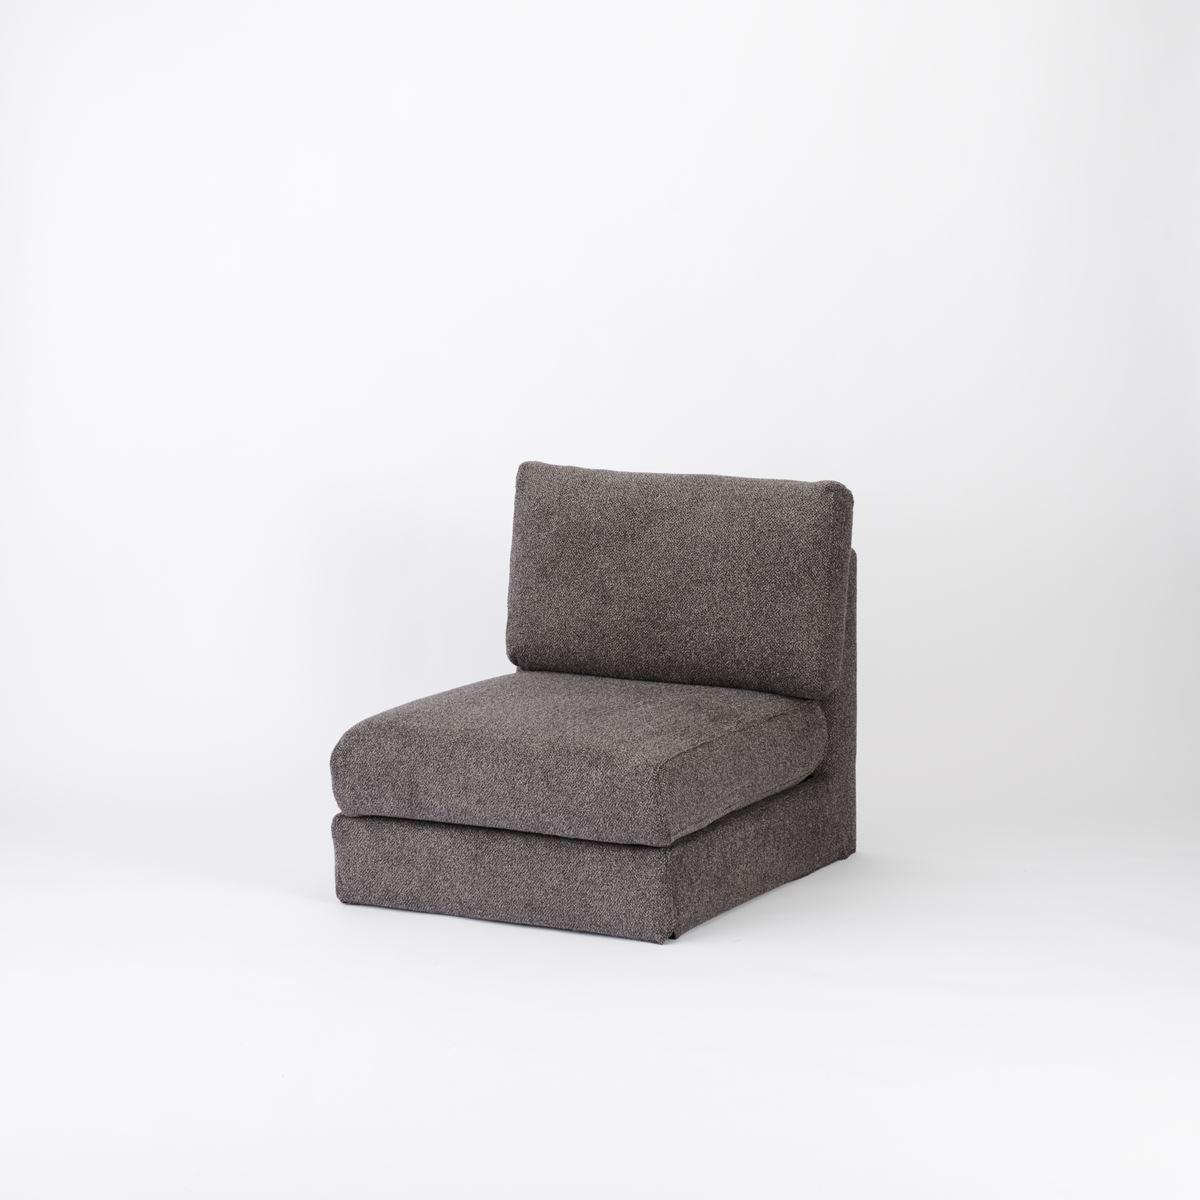 KUUM  Sofa 1 seater - Full Cover / クーム ソファ